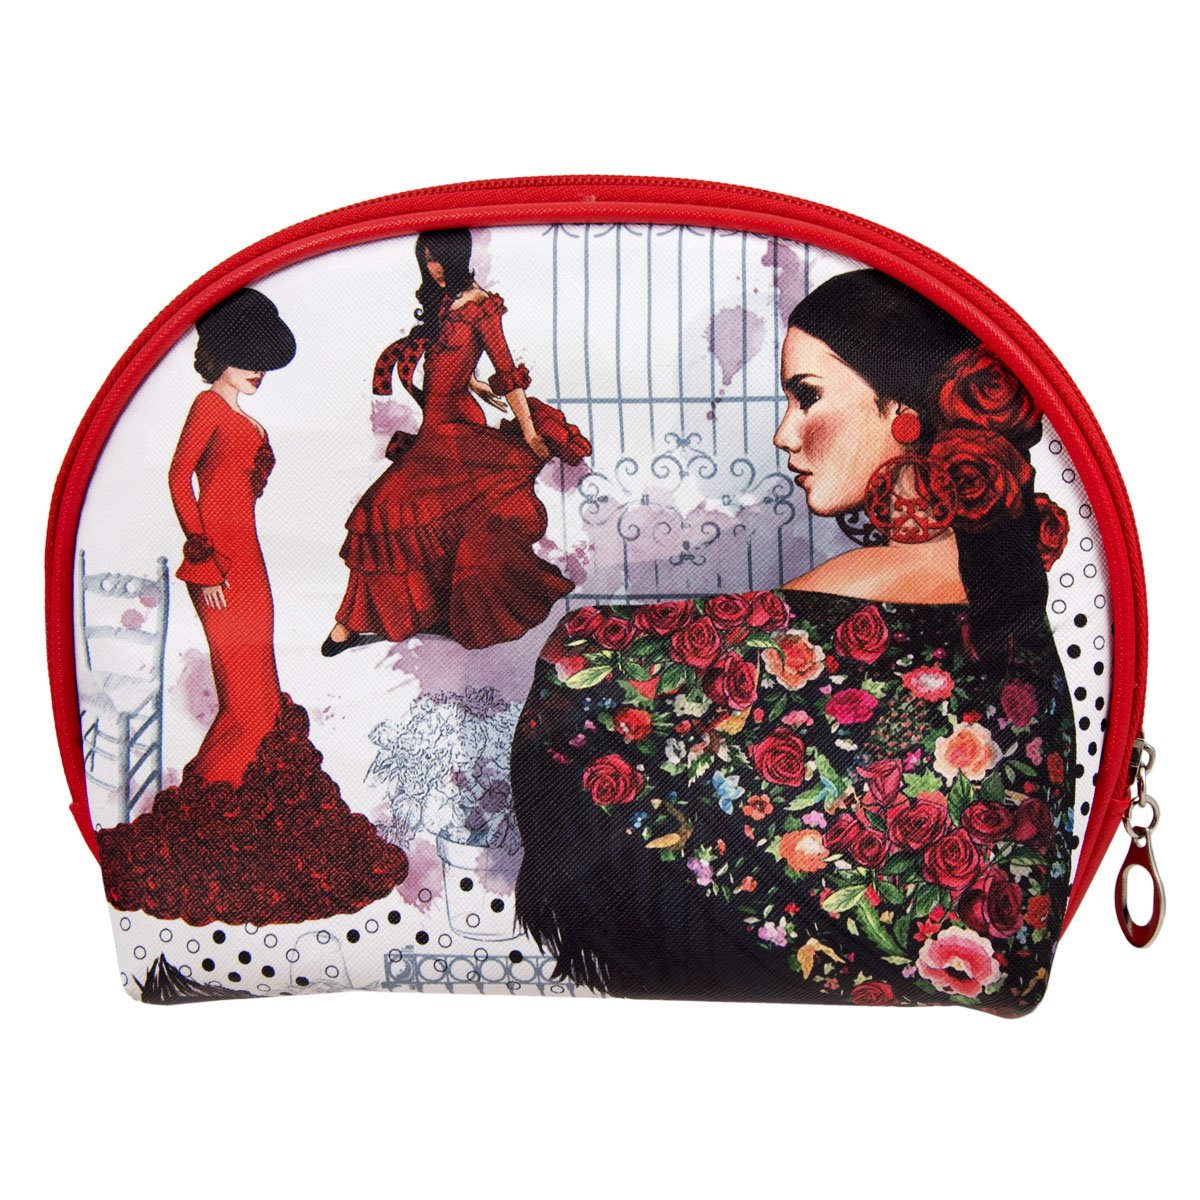 JAVIER - Set de 3 Neceseres Ovalados con Cierre de Cremallera, Colección Flamenca